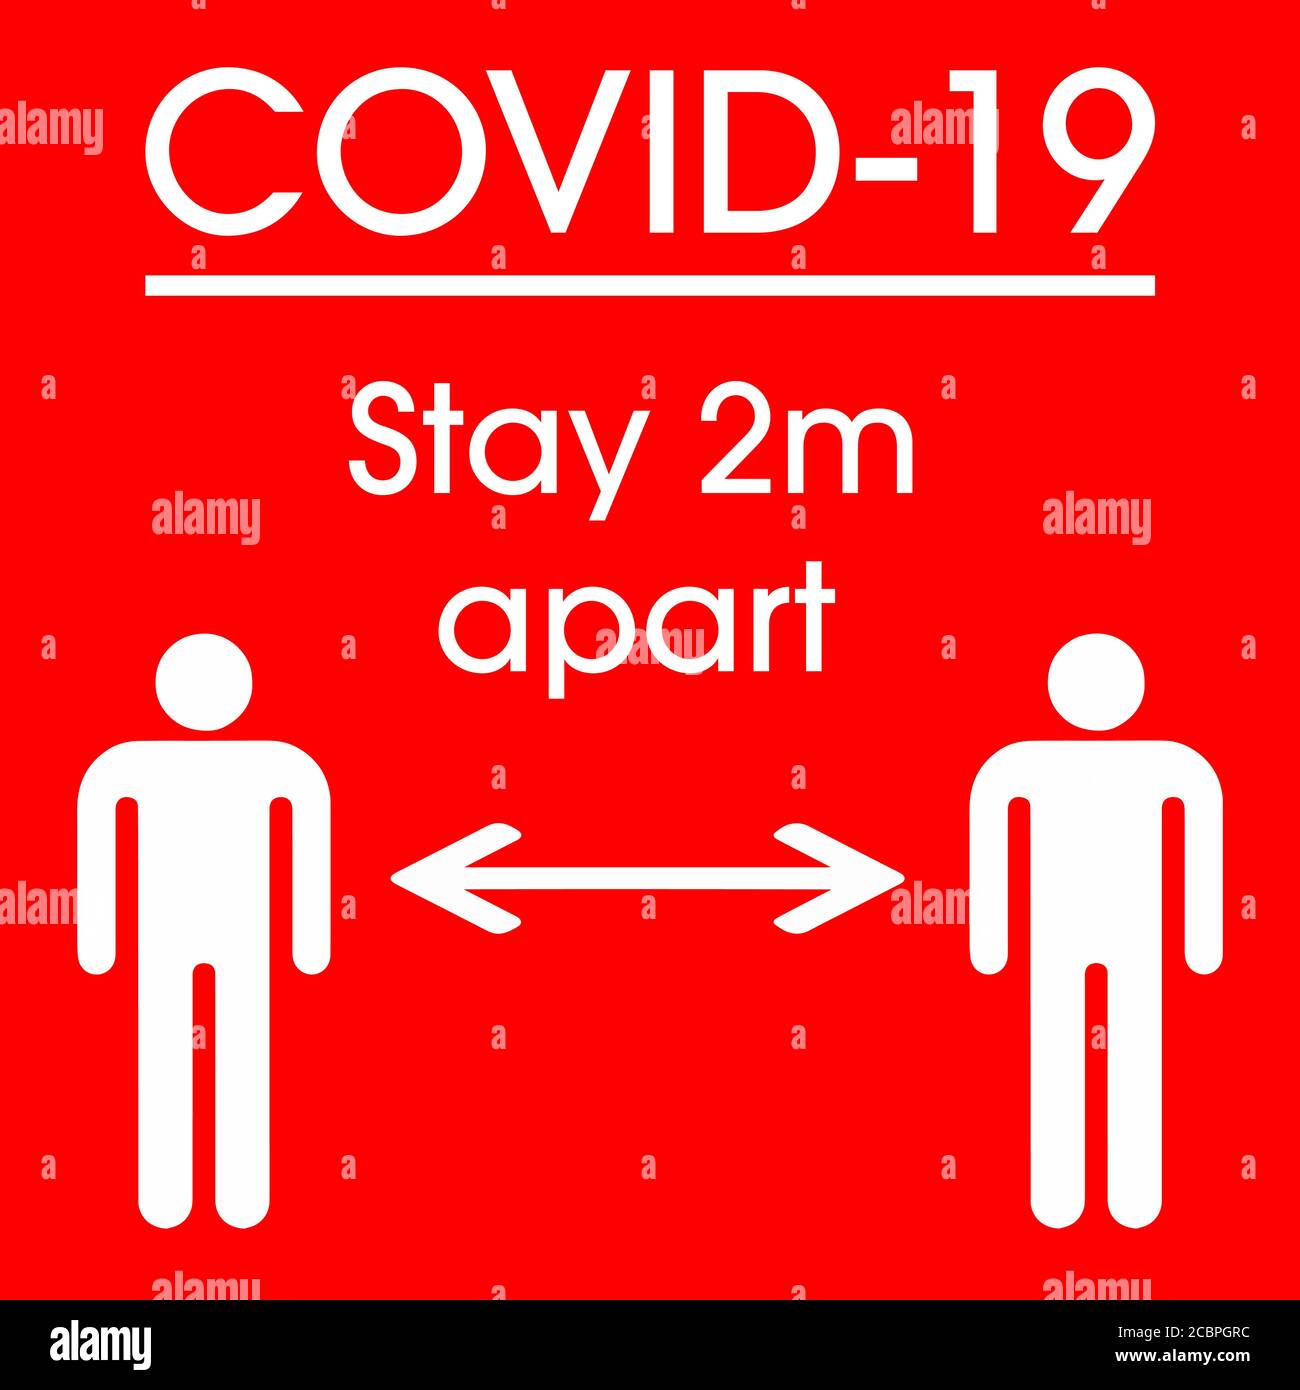 COVID-19 Keep Apart Signage, um Menschen zu ermutigen, körperliche oder soziale Distanz zu halten Stock Vektor